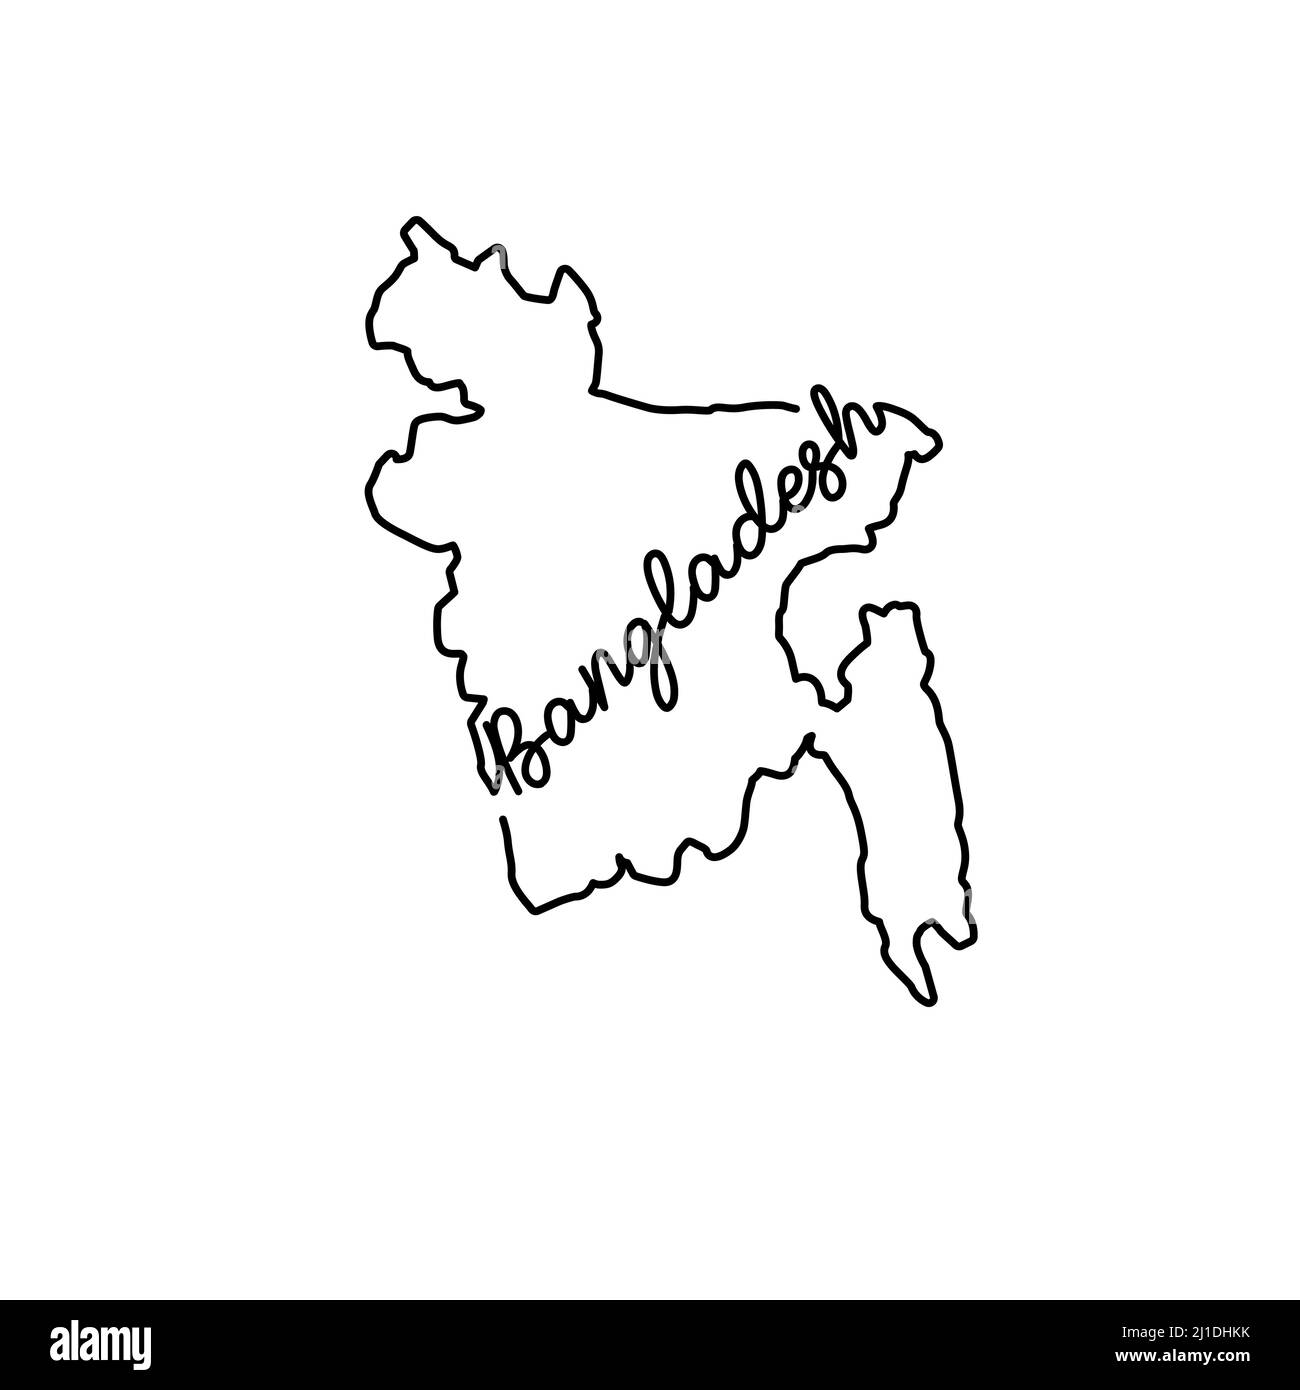 Carte du Bangladesh avec le nom manuscrit du pays. Dessin de ligne continue de signe de maison patriotique. Un amour pour une petite patrie. Imprimé t-shirt i Illustration de Vecteur